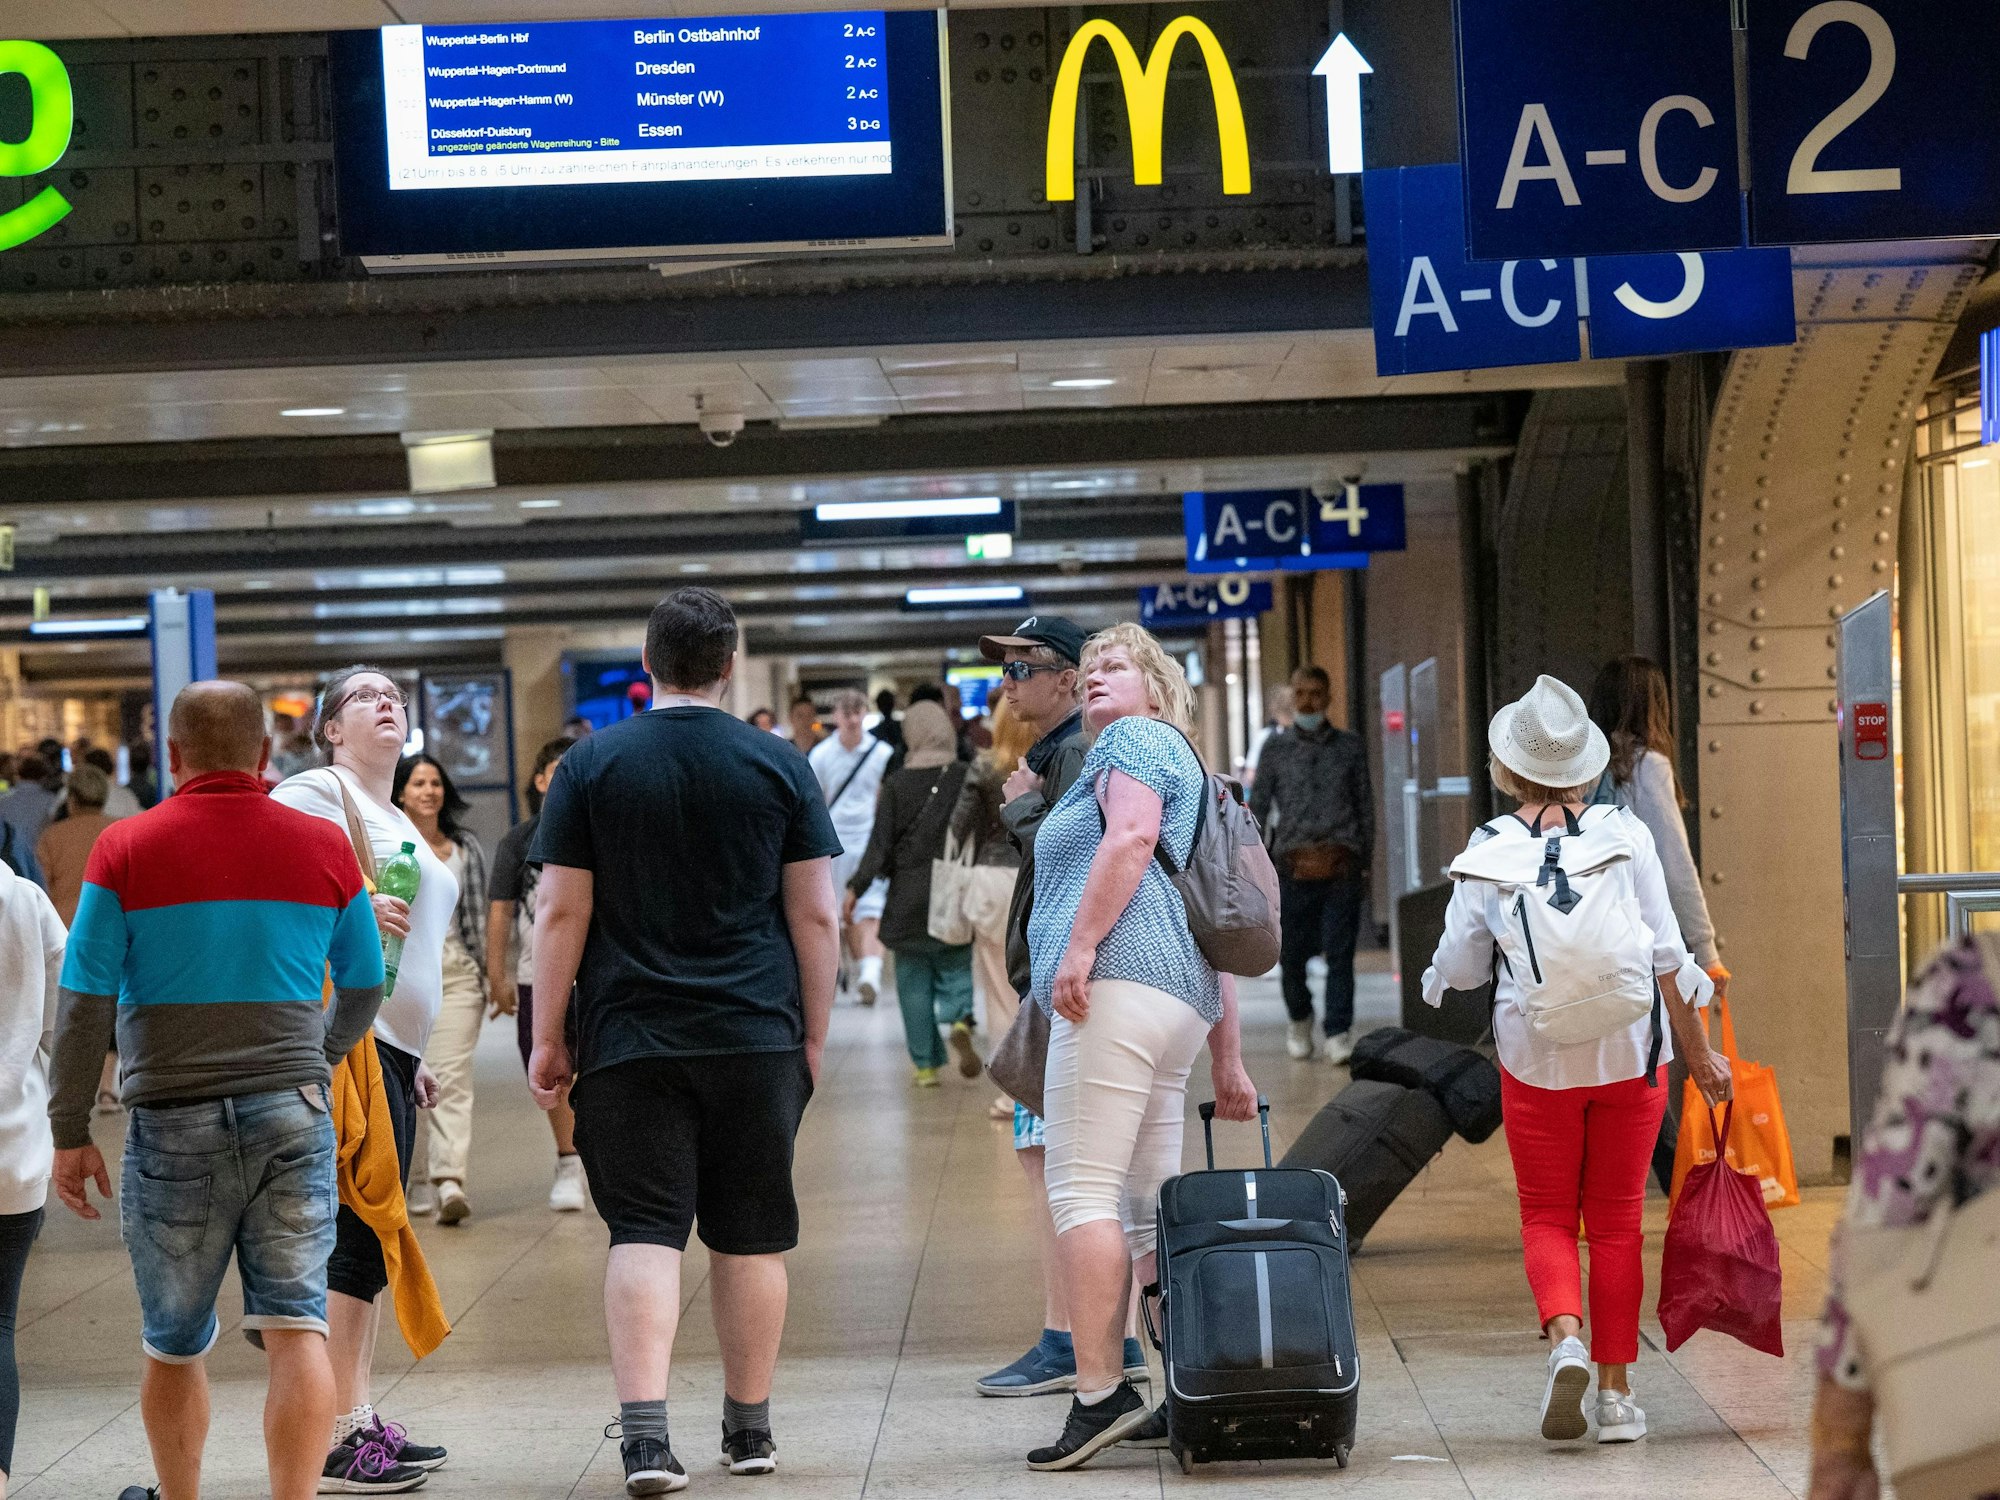 Reisende suchen nach Informationen auf den Anzeigetafeln im Kölner Hauptbahnhof.